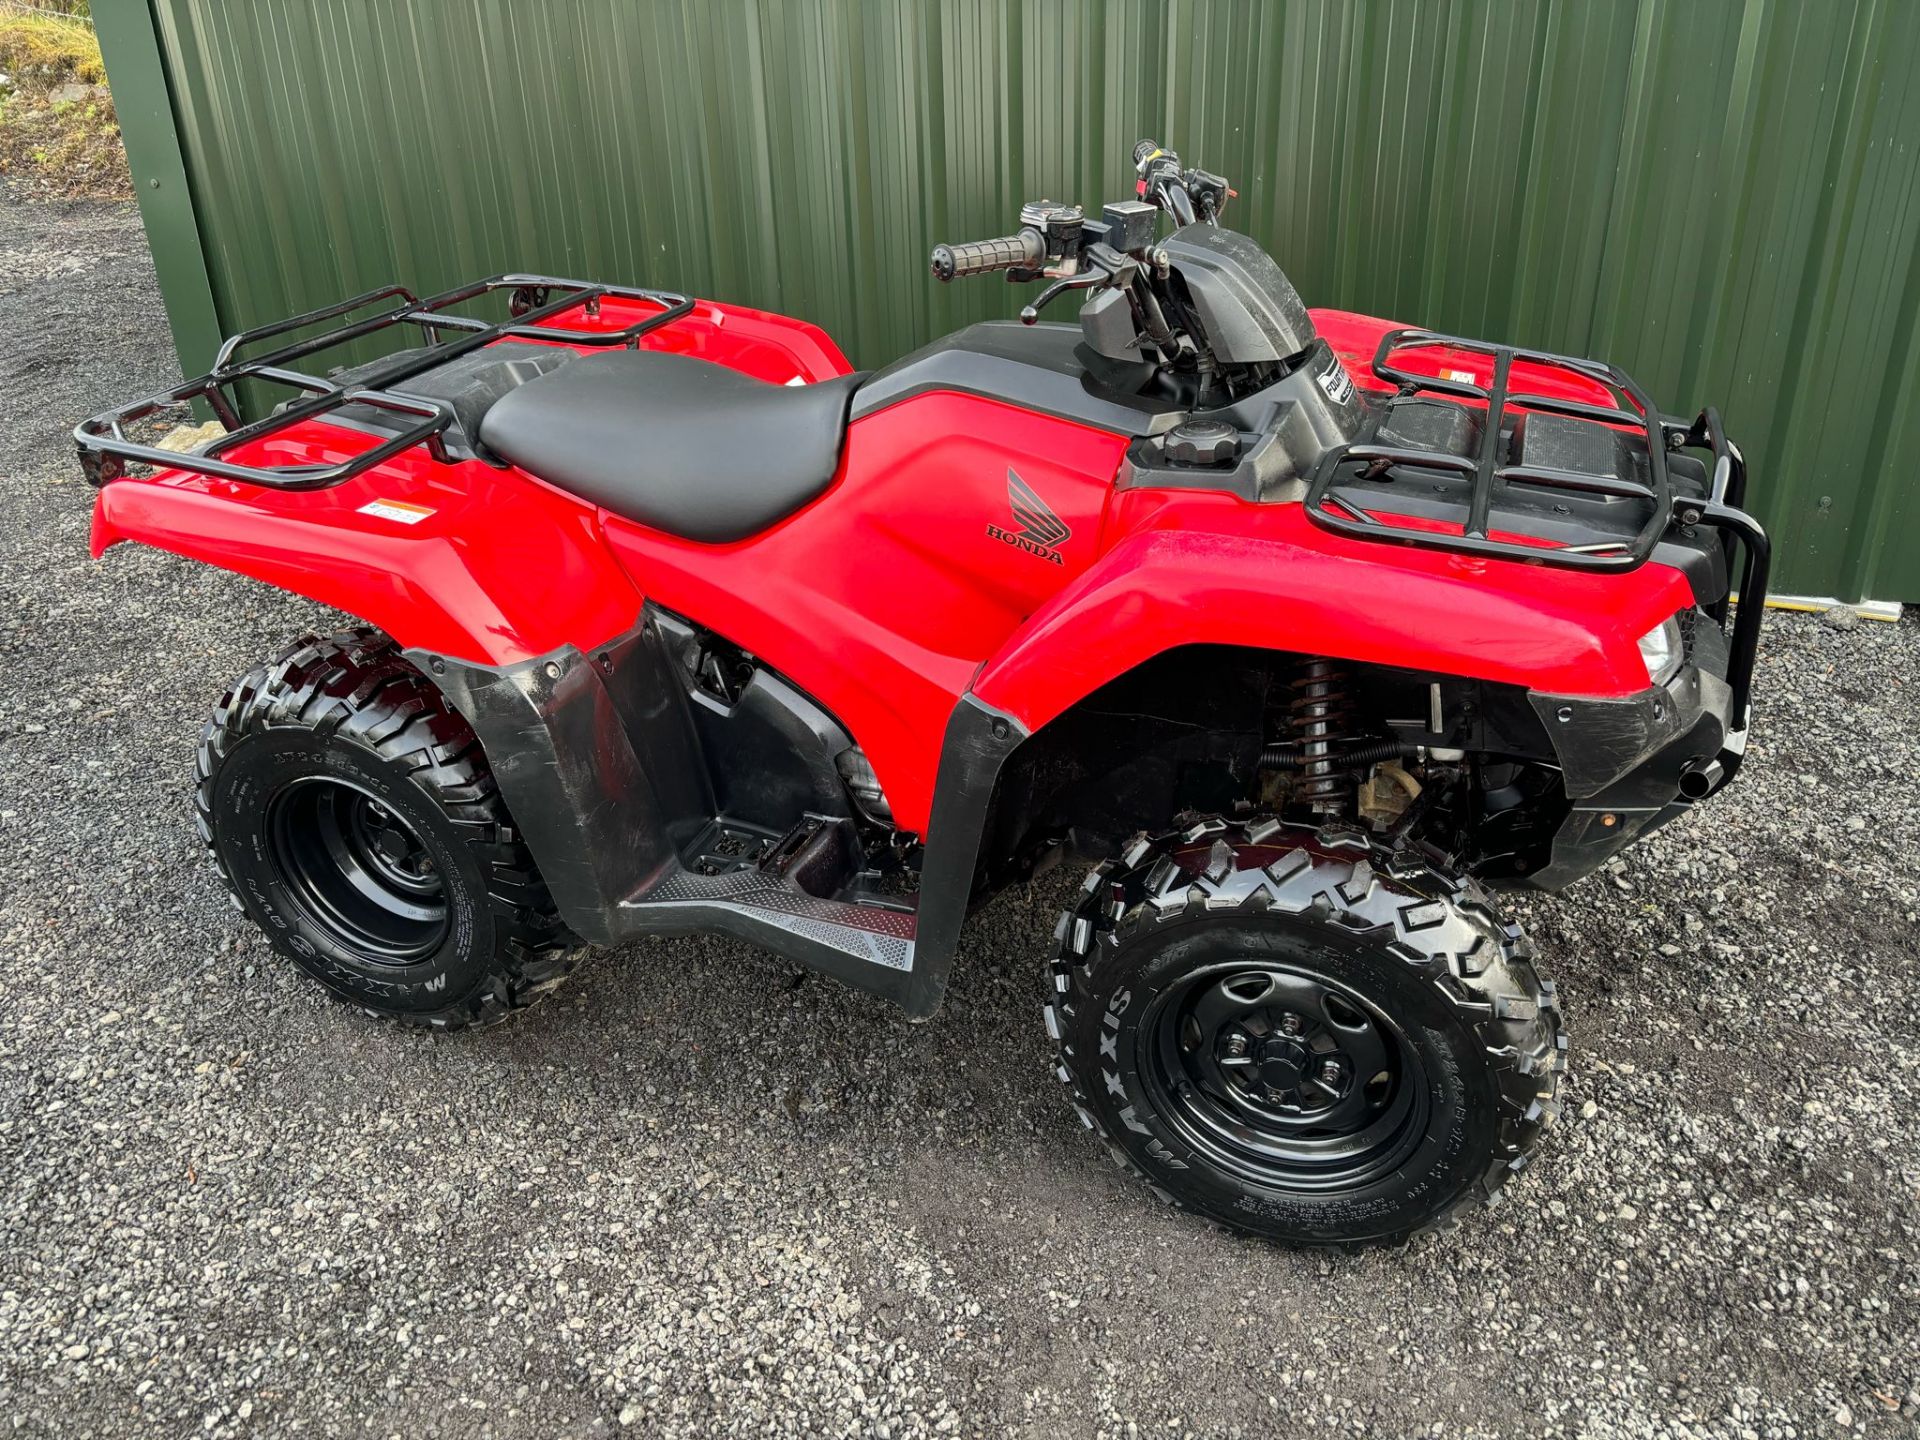 2019 ROAD REGISTERED HONDA TRX420 FARM QUAD BIKE ATV FOURTRAX TRX 420FM 4X4 4WD - Image 5 of 11